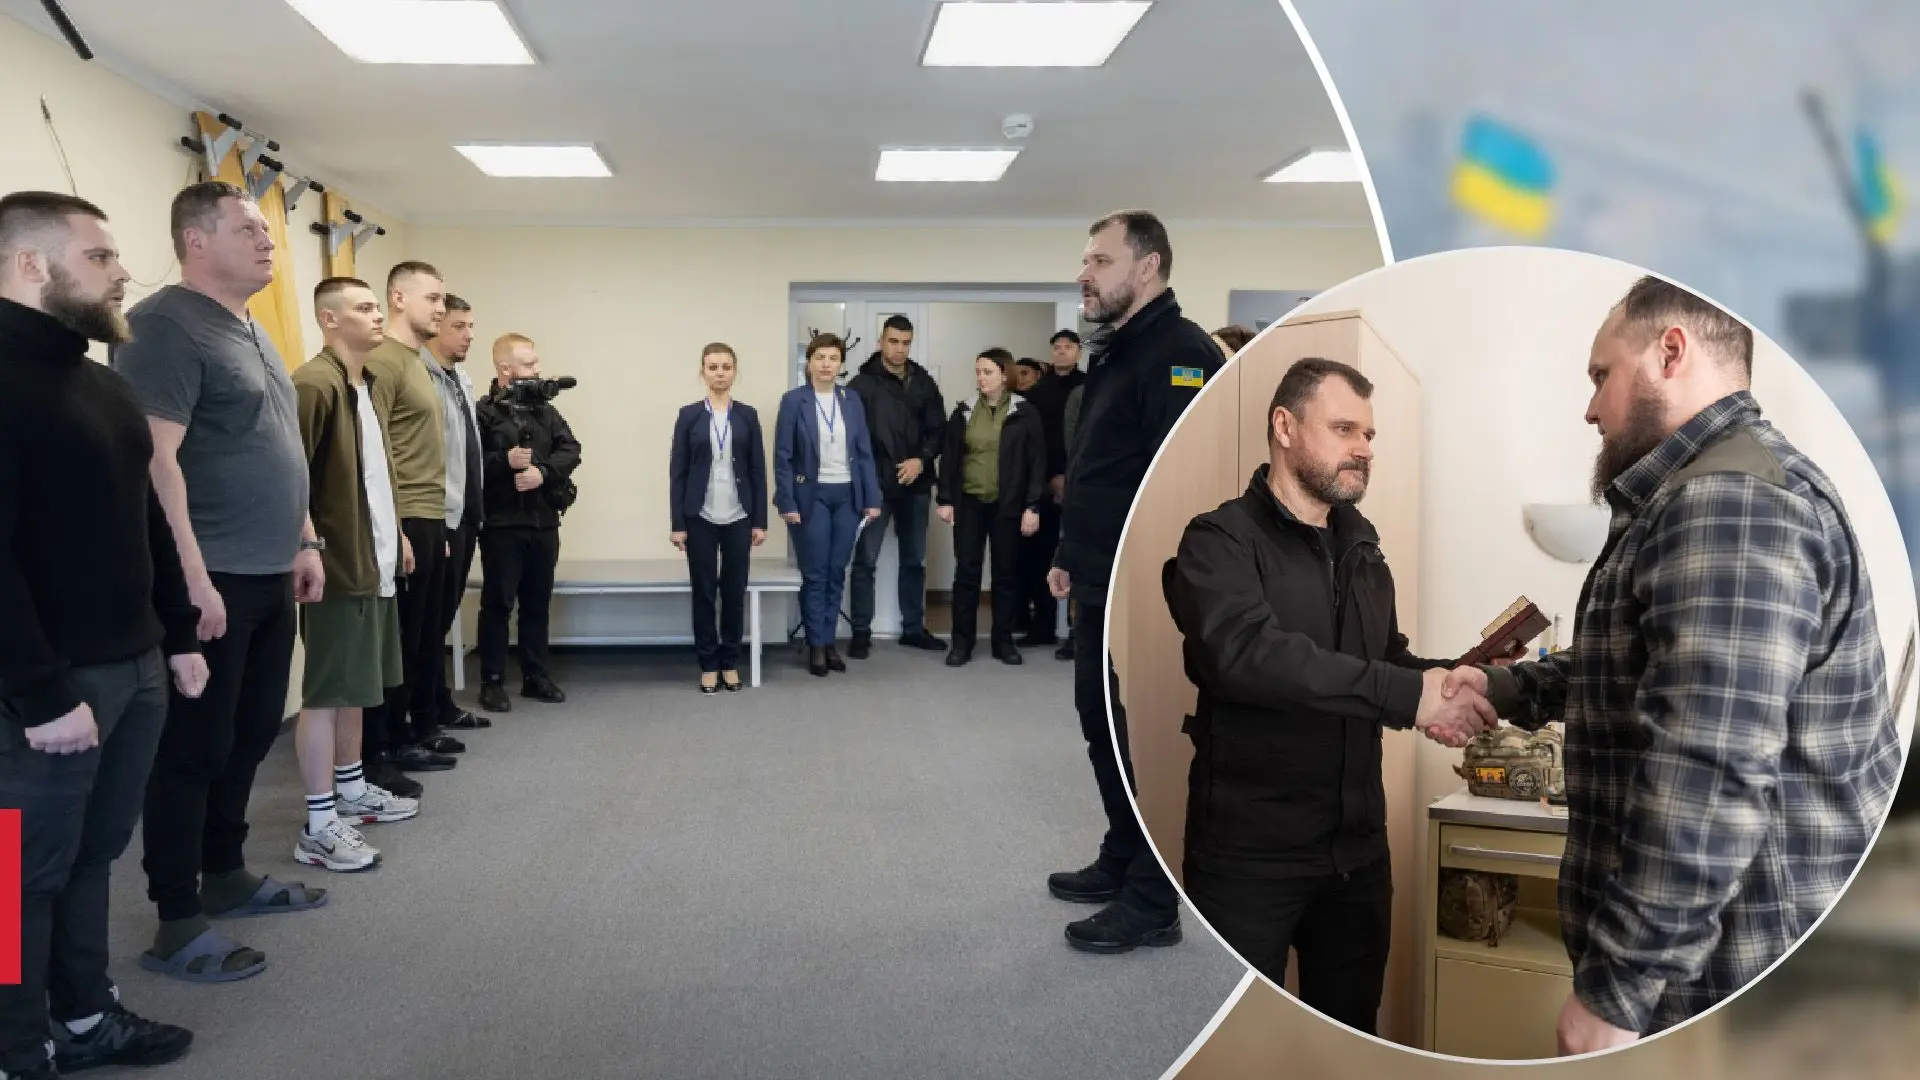 Міністерство внутрішніх справ відзначило значні зміни у роботі реабілітаційних центрів за минулий рік, - зазначив Клименко.